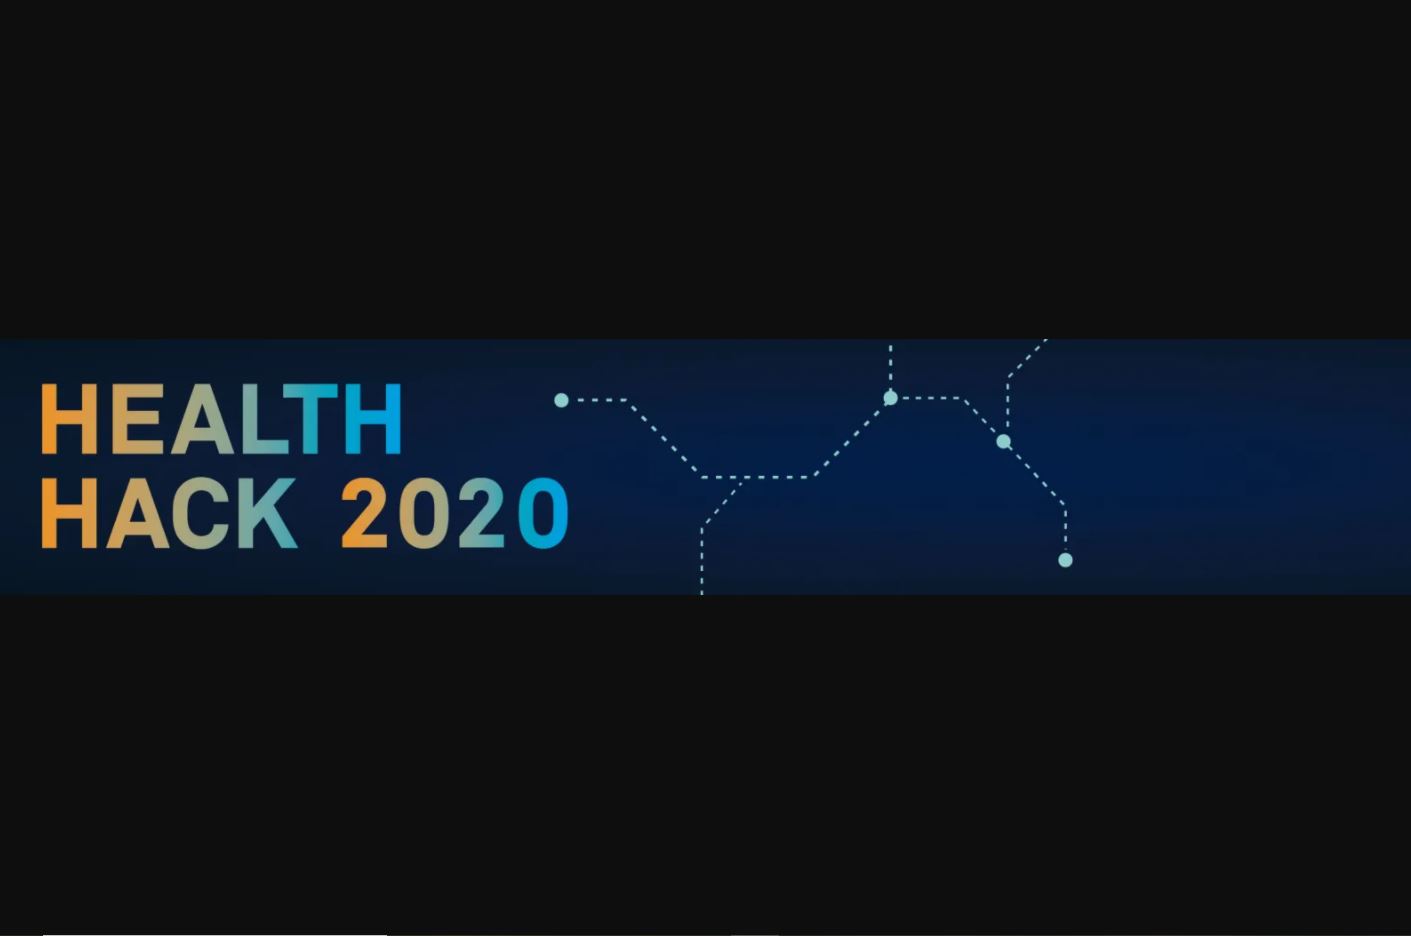 Logo Health Hack 2020 bunte Schrift auf einem blauen Streifen auf schwarzem Hintergrund